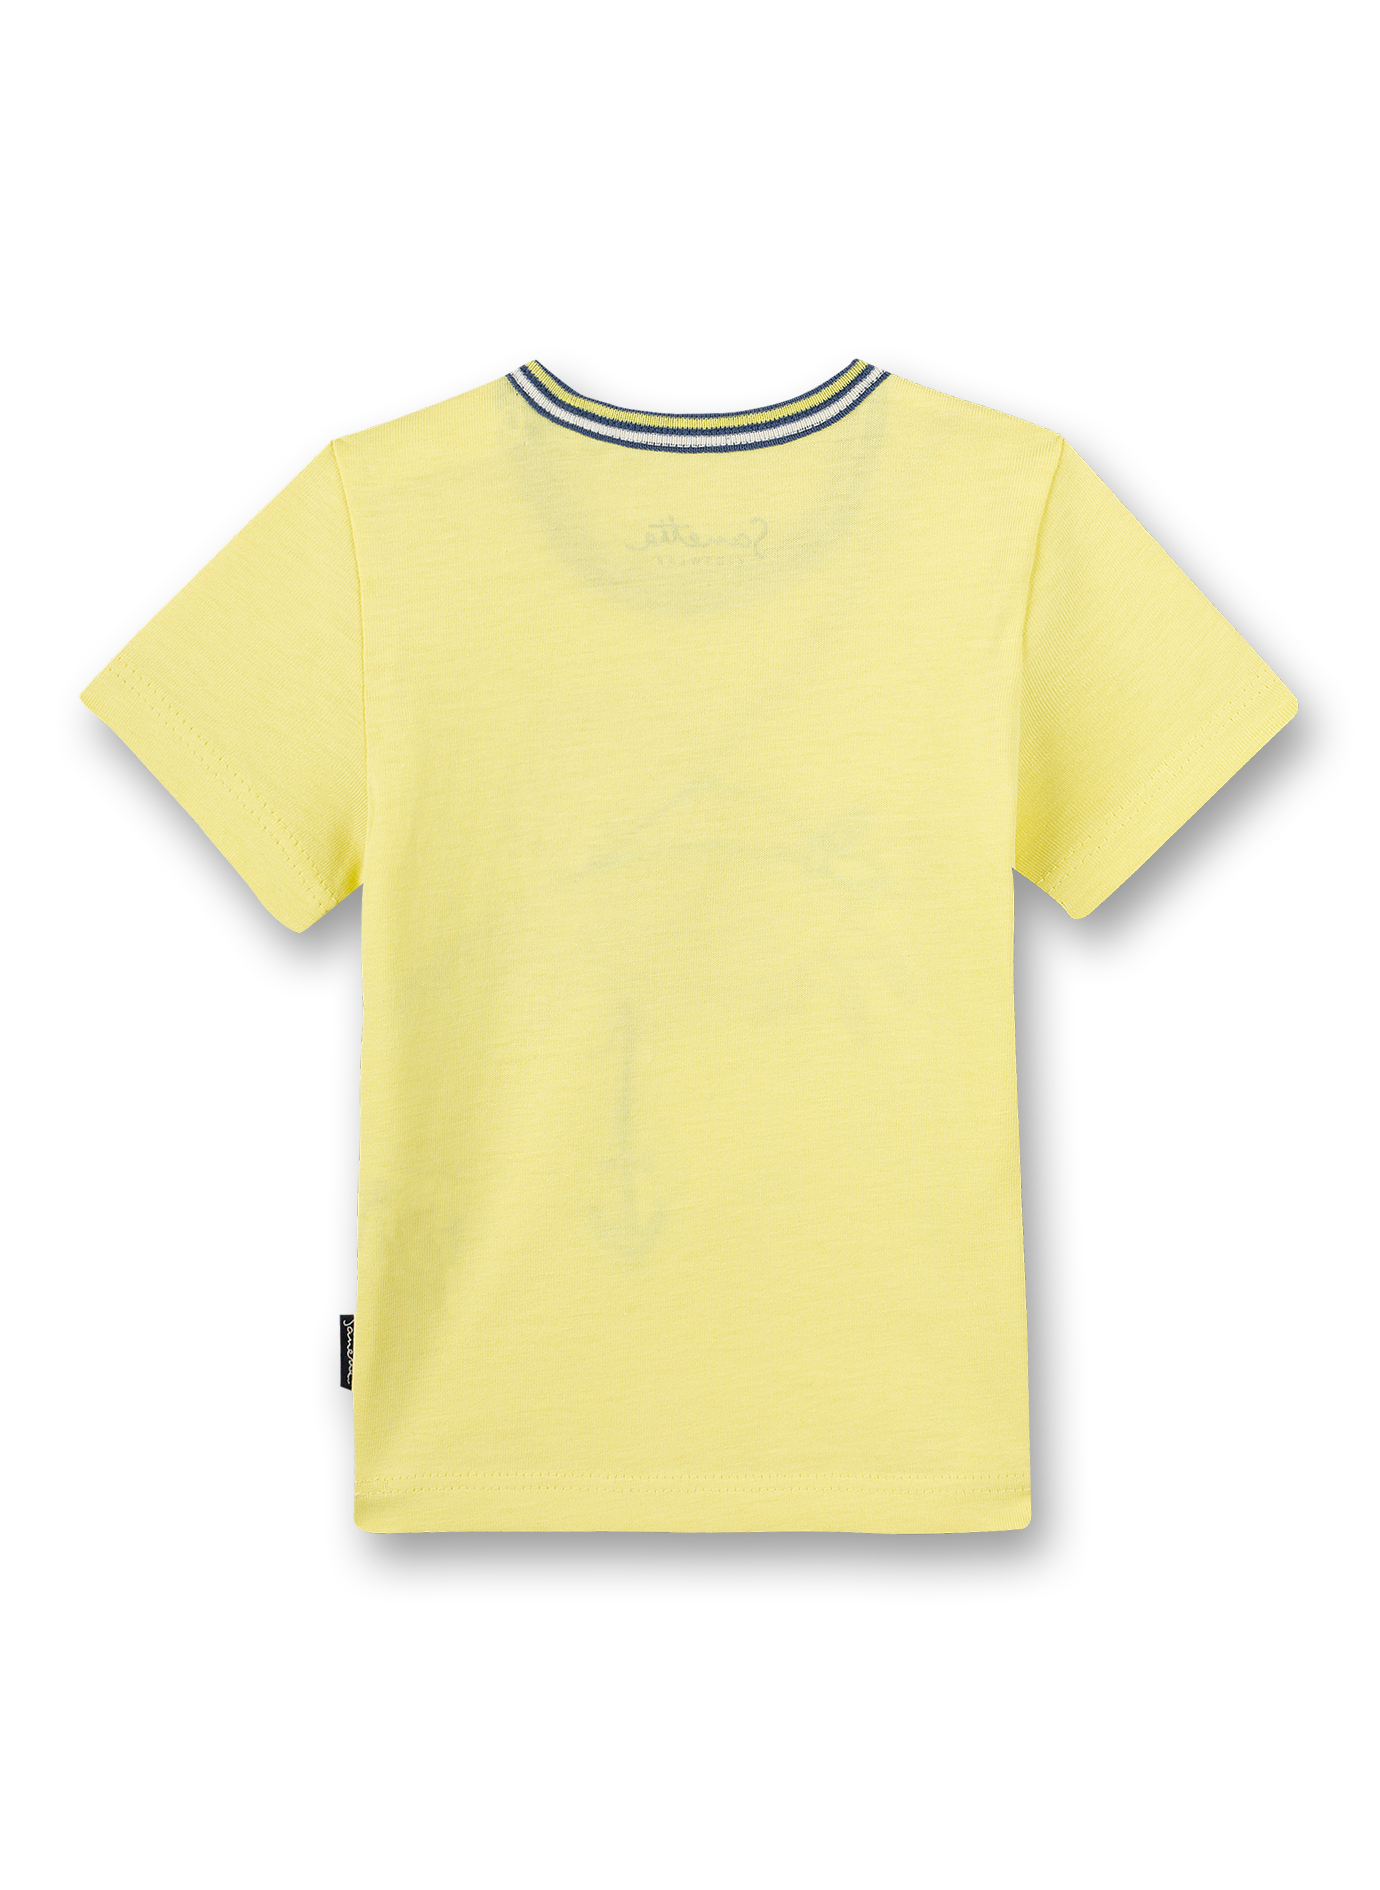 Jungen T-Shirt Gelb Beach Crab